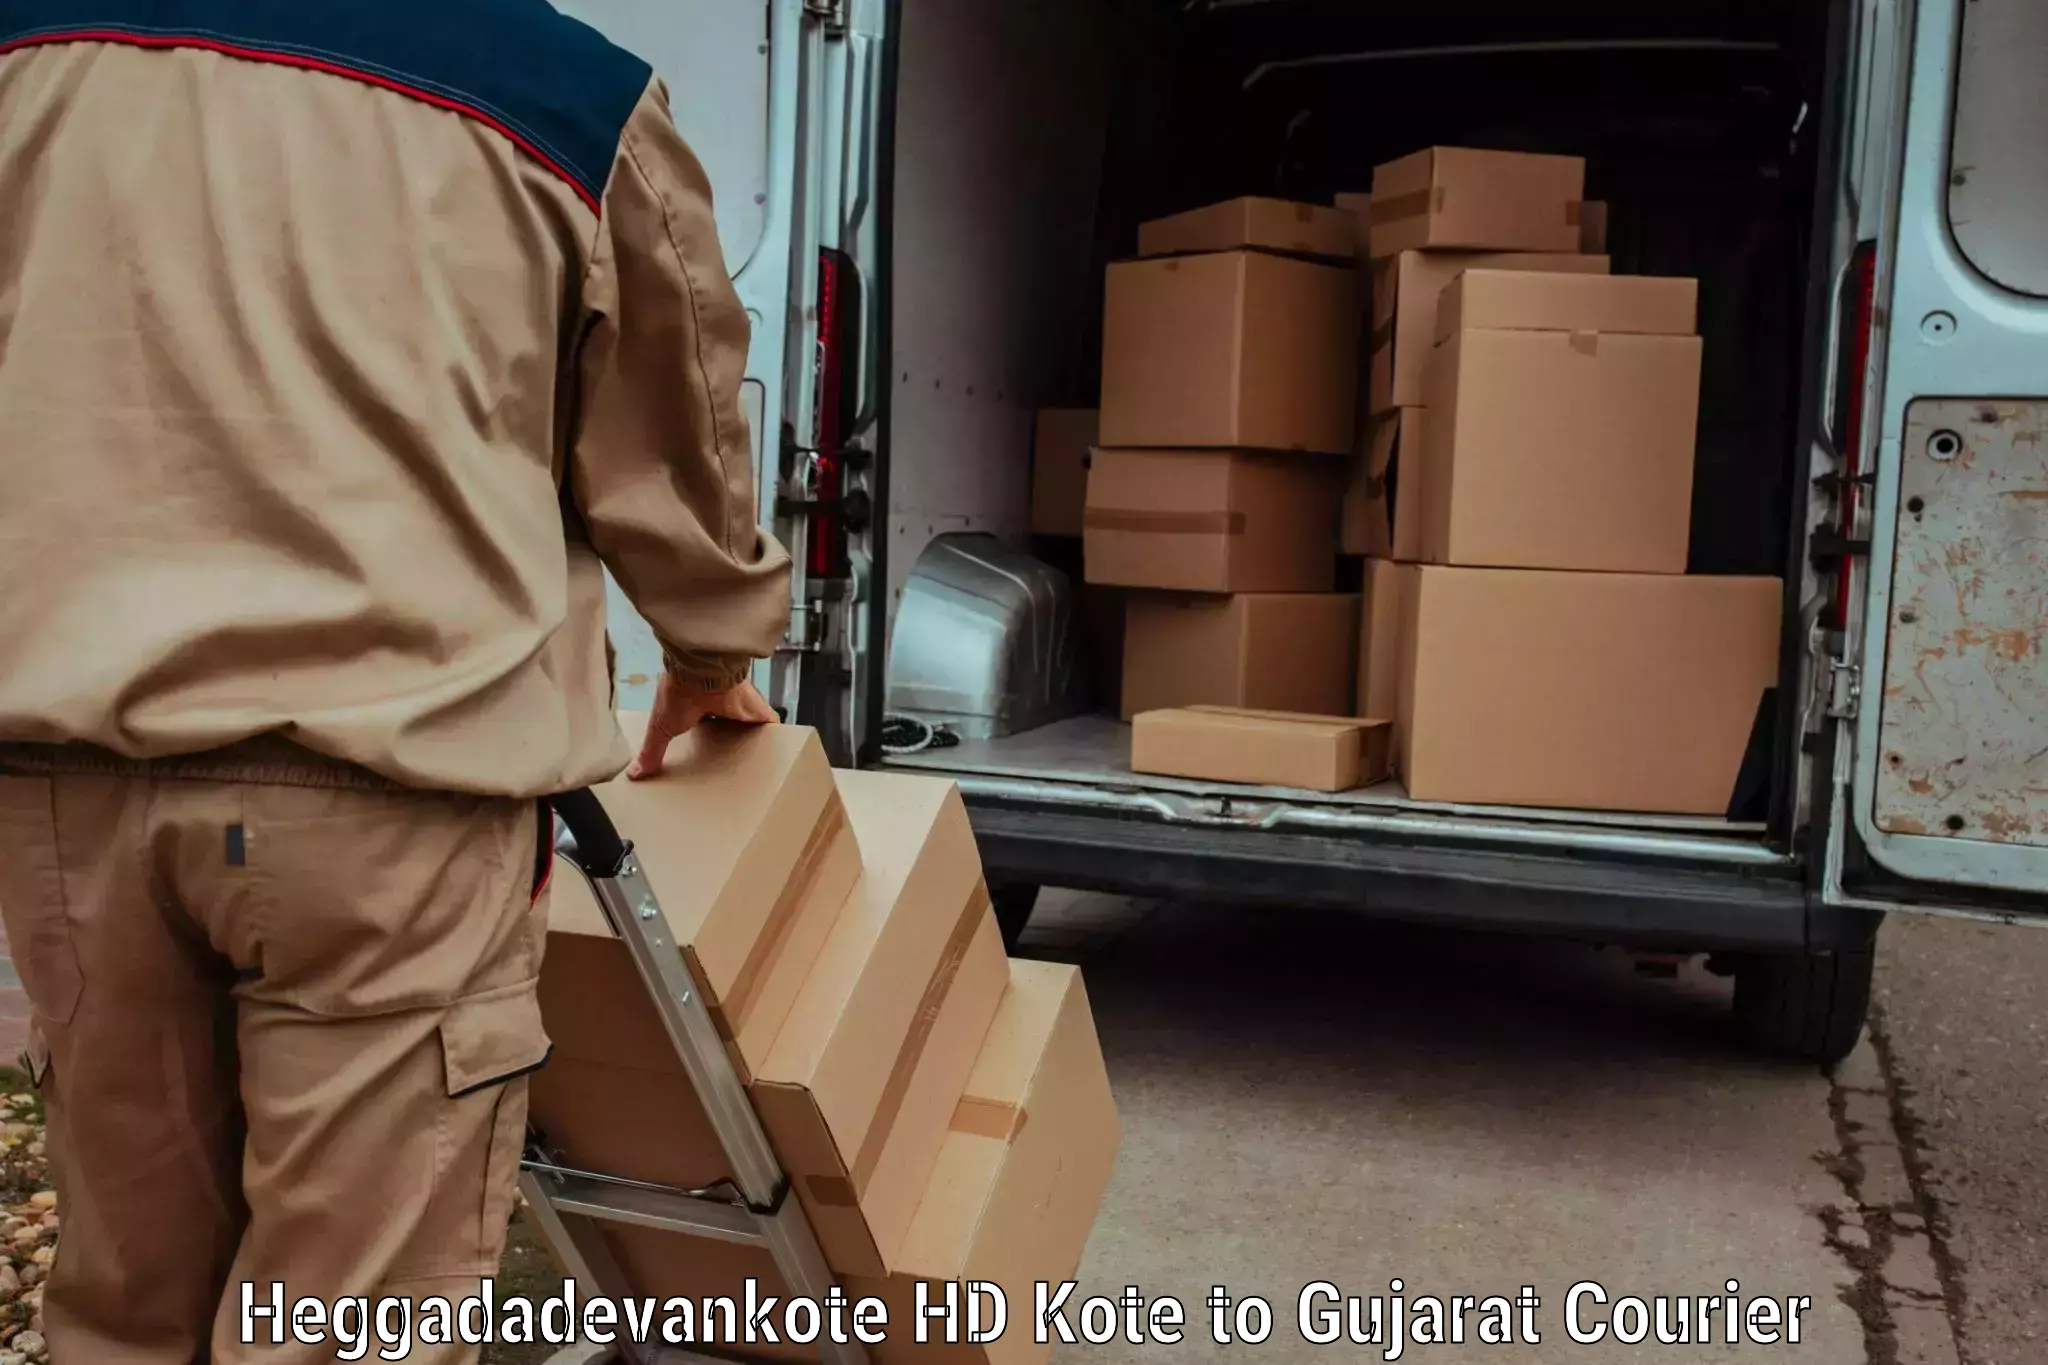 Custom courier packaging in Heggadadevankote HD Kote to Vagara